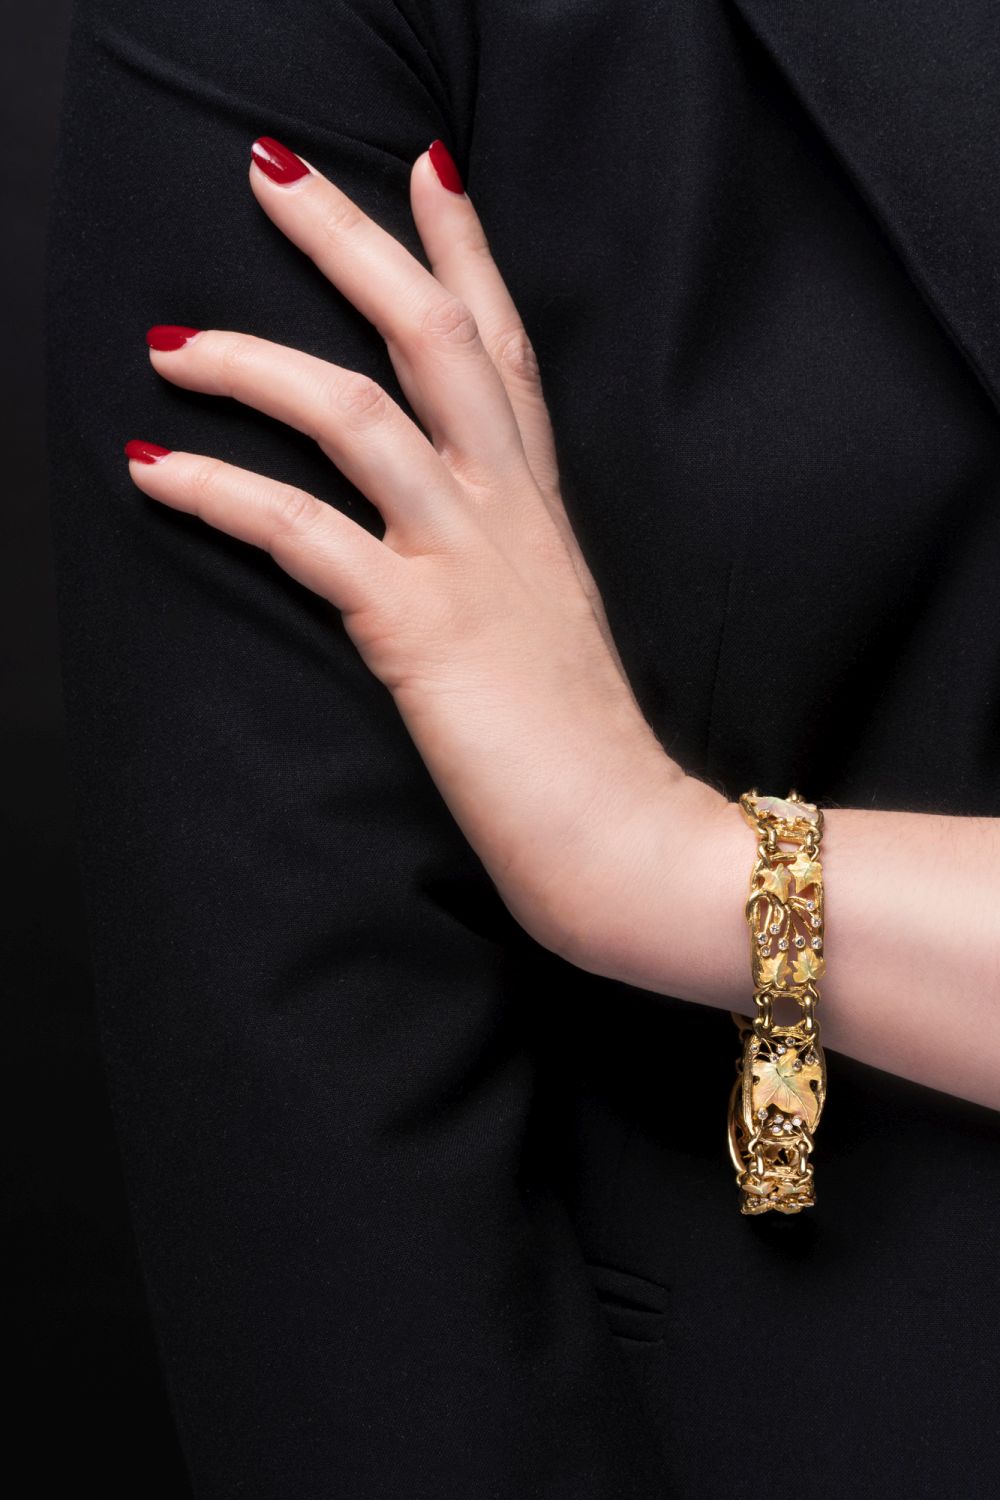 An Art Nouveau Gold Diamond Bracelet 'Cep de Vigne' with enamel ornaments - image 2